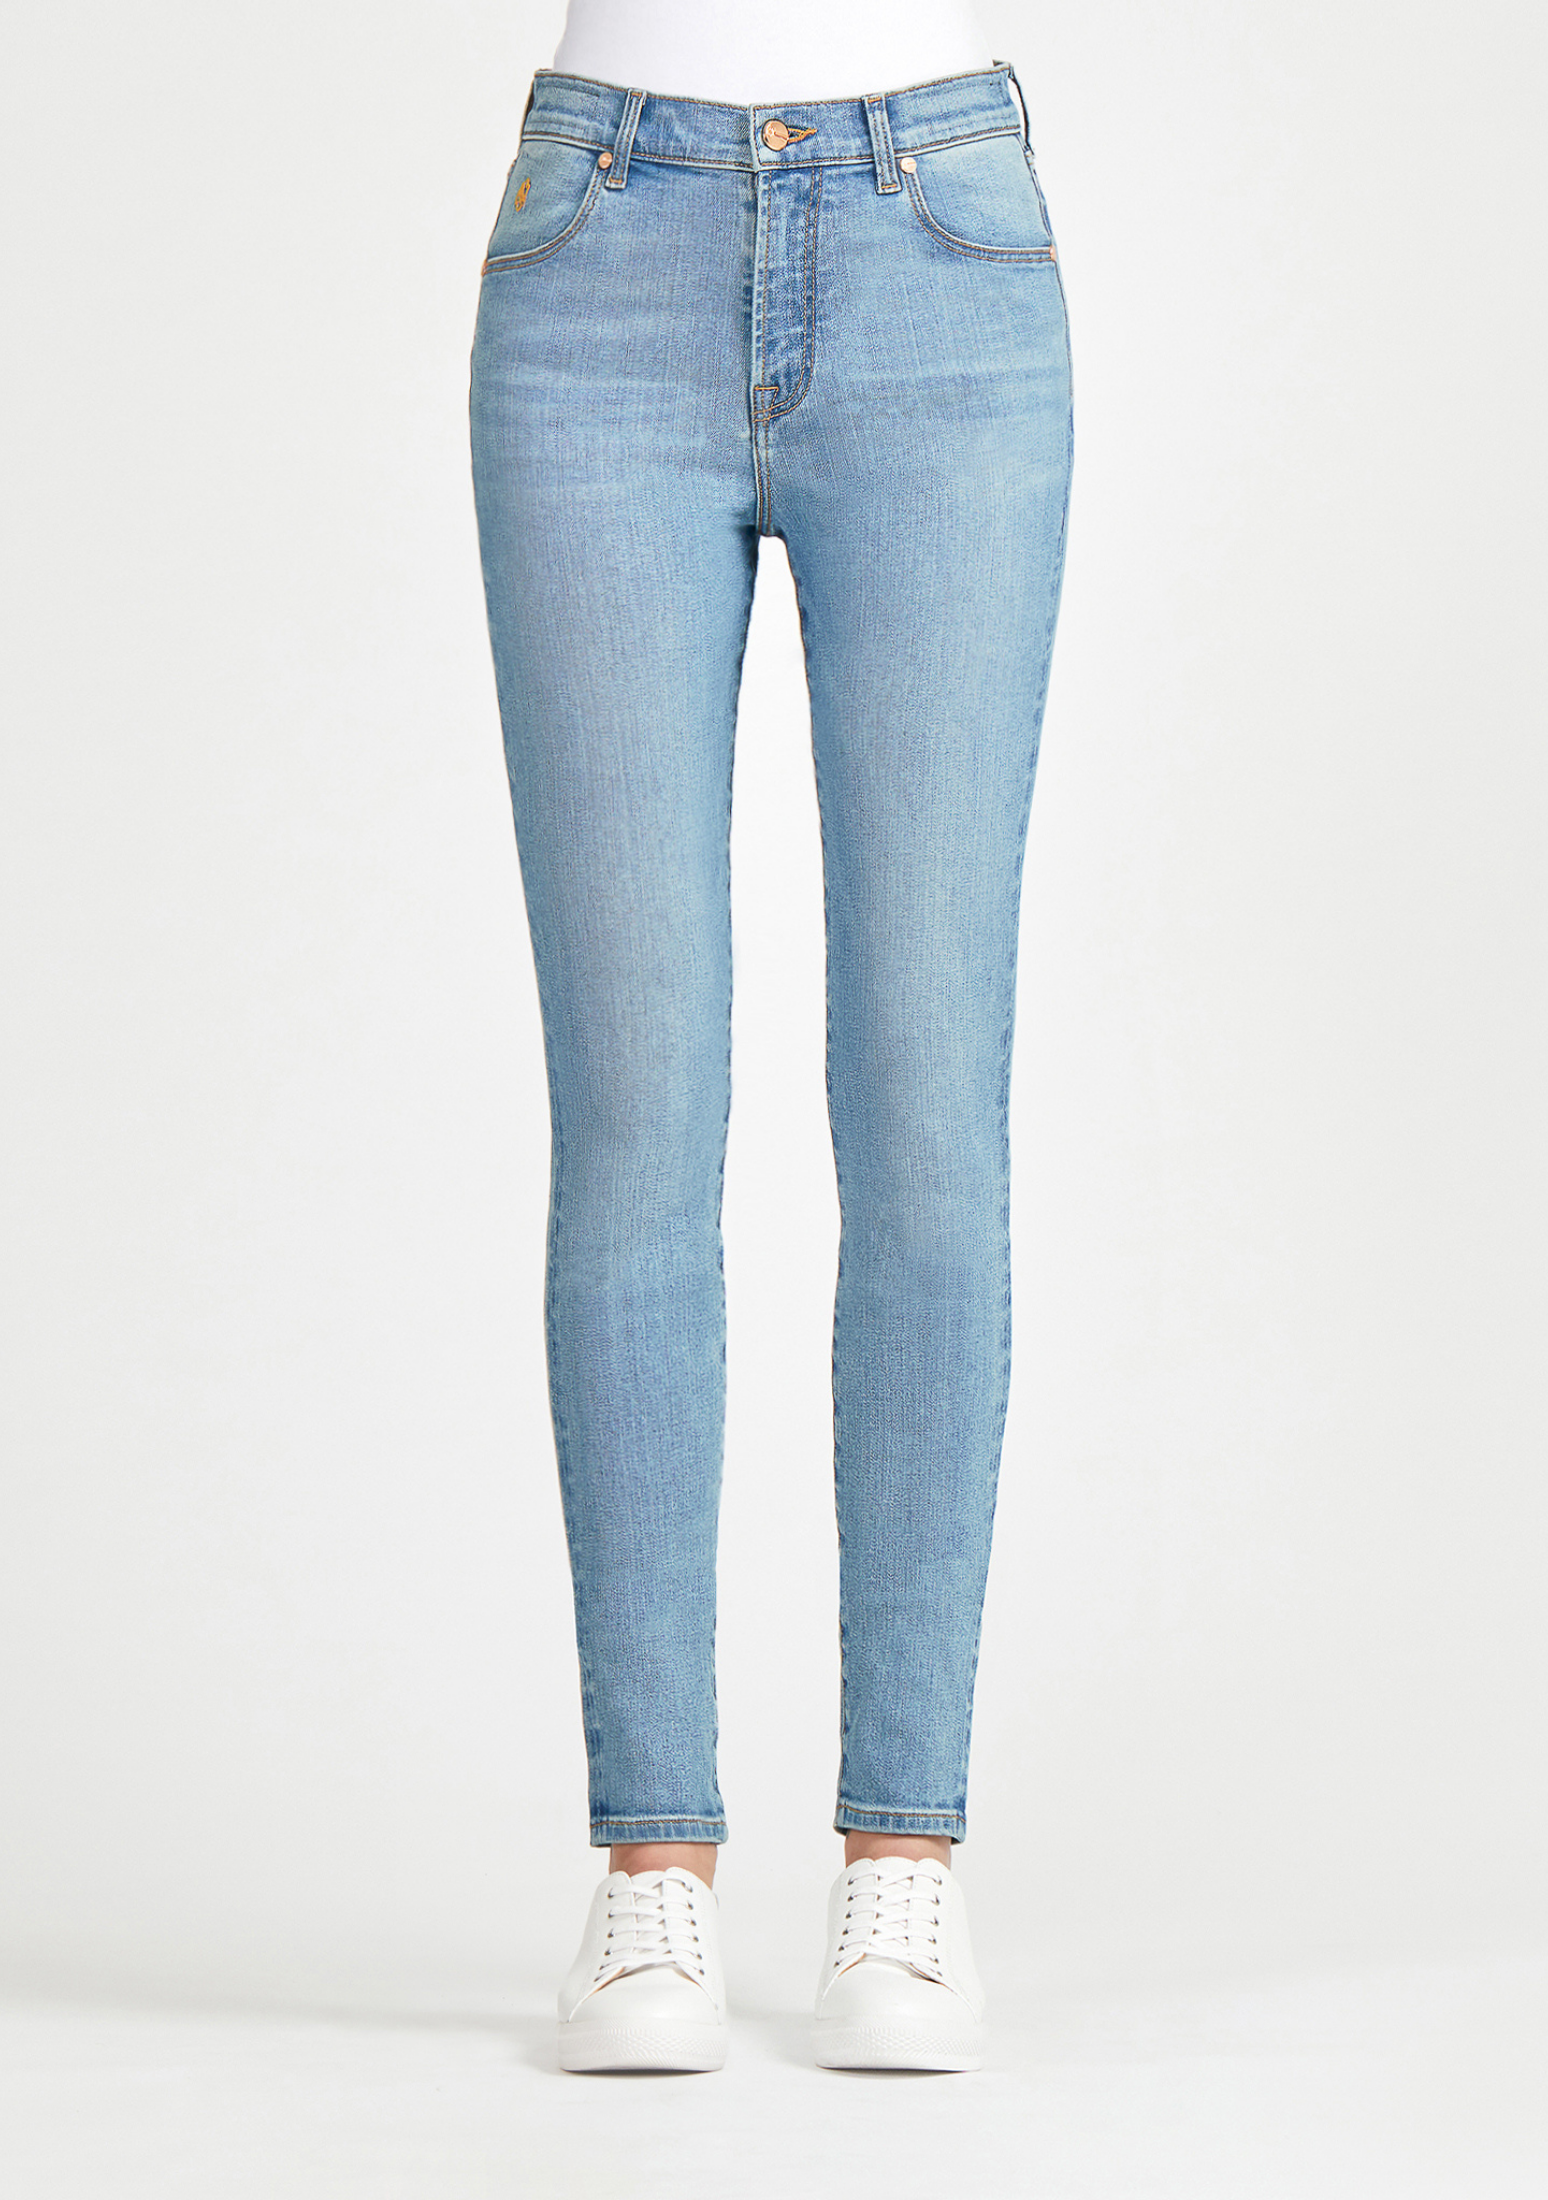 Blue Skinny Jeans for Women  SOUL OF NOMAD Women's Denim Akira